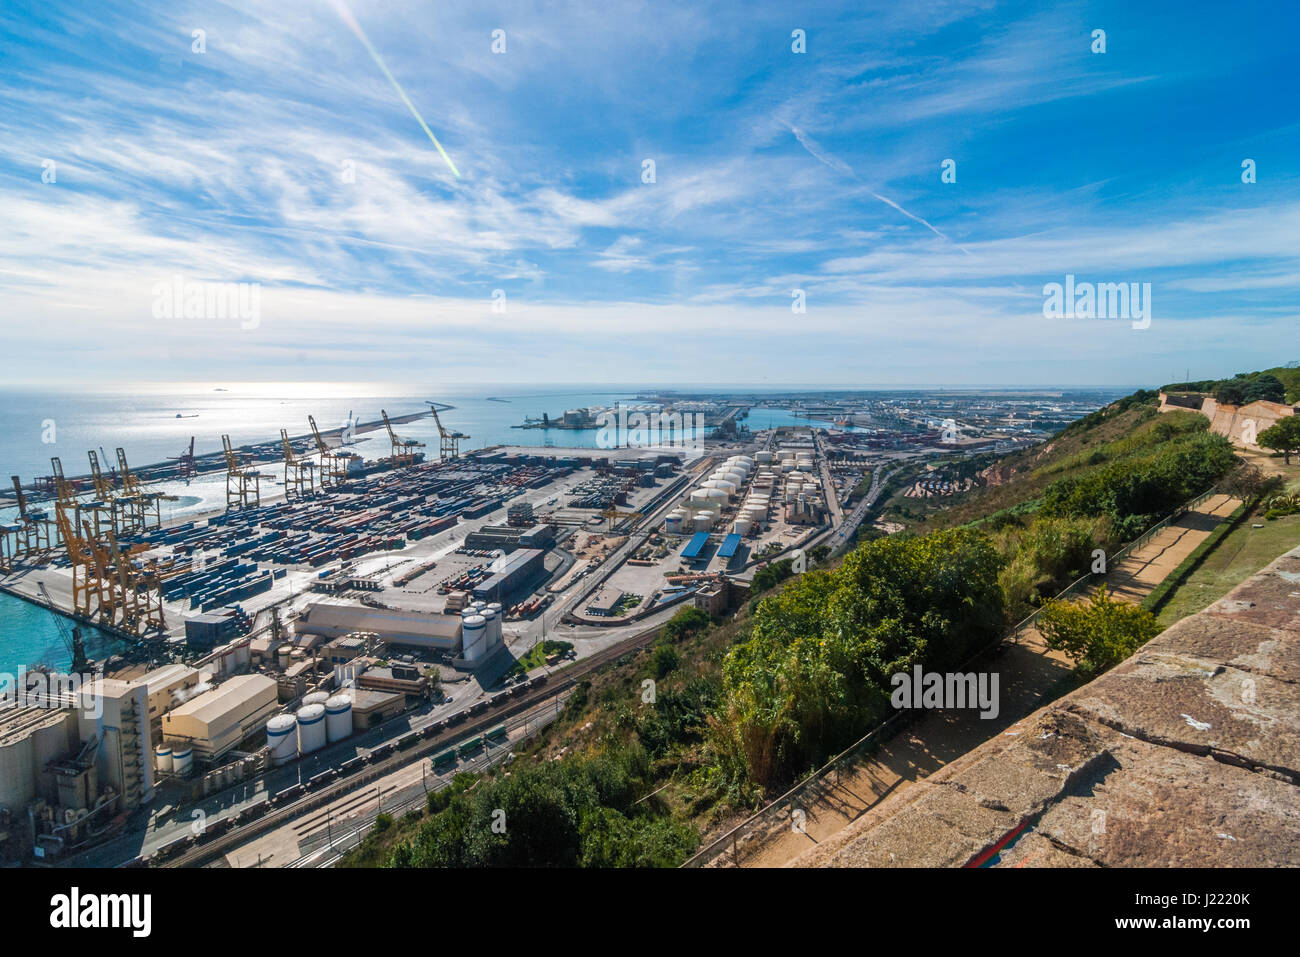 Sonnenschein auf Balearen Meer & Barcelona Versand- und Schiene Industriehäfen an einem Blue-Sky Tag.  Verkehrsknotenpunkt & Gleiszone in Barcelona. Stockfoto